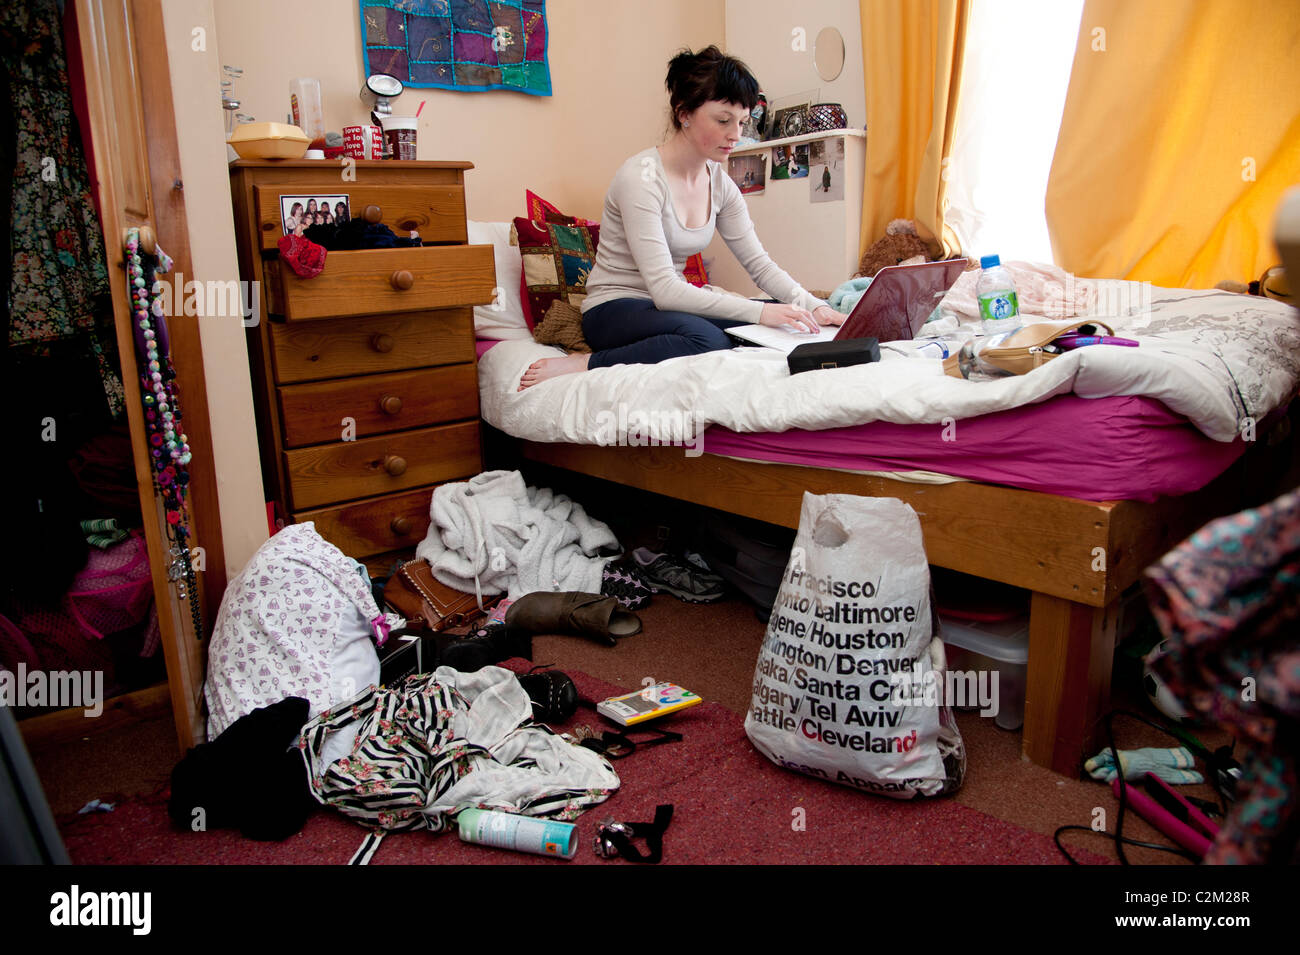 Una joven estudiante de la universidad de aberystwyth en el Reino Unido trabajan en su computadora portátil en la cama en un dormitorio desordenado Foto de stock